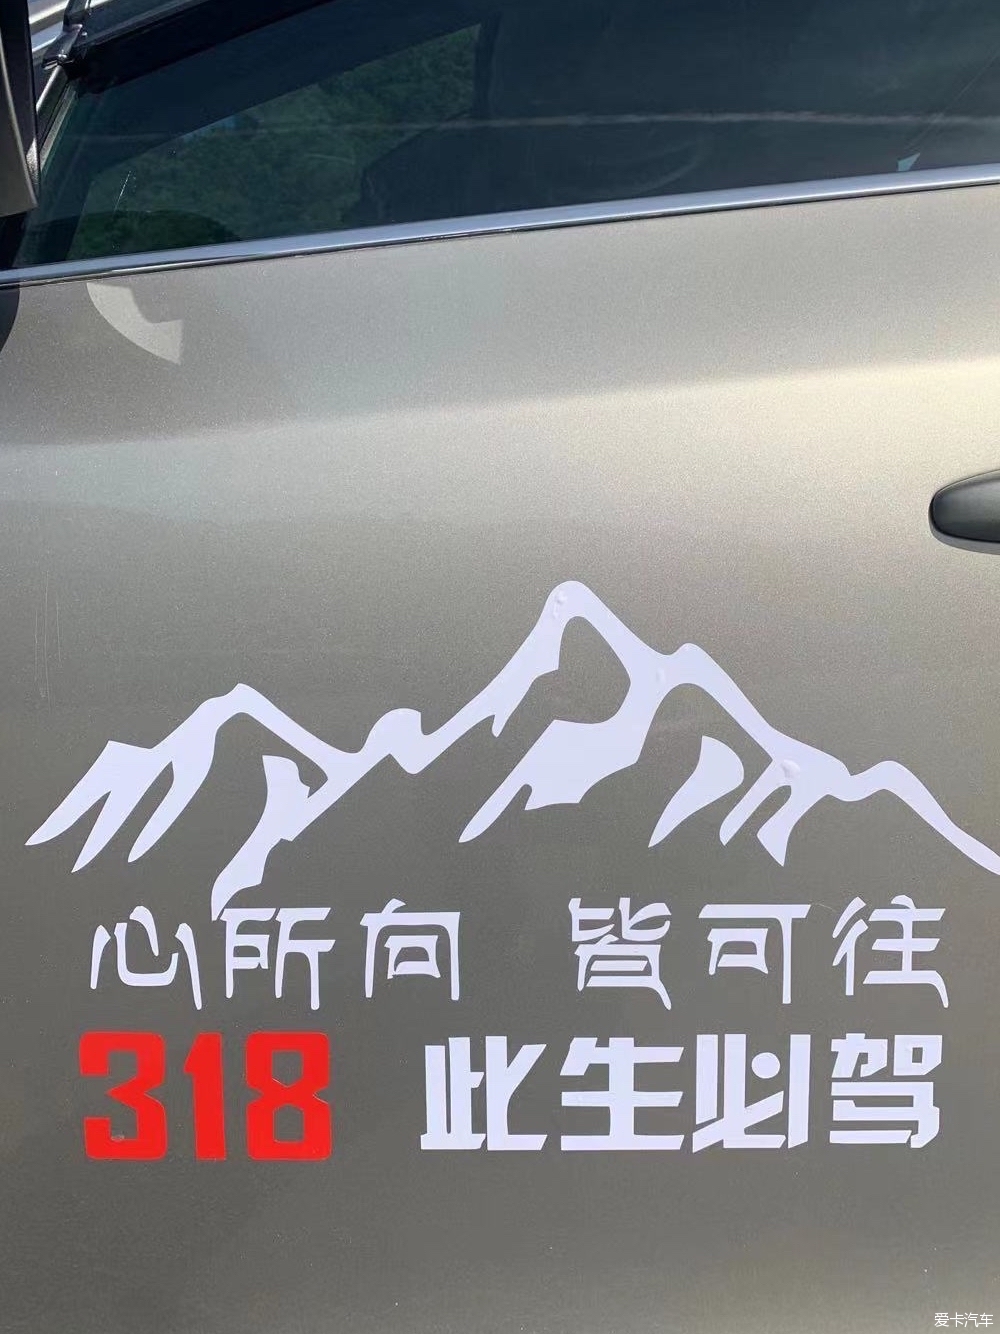 此生必驾G318西藏之旅第一站四川雅安